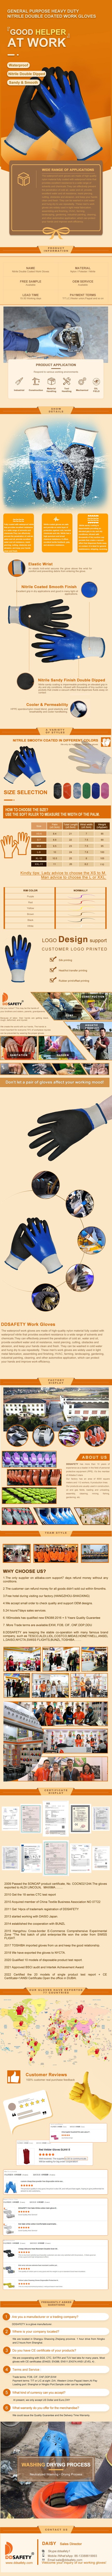 Waterproof Gloves - DNN626 Waterproof Gloves - DNN626 gloves,Waterproof Gloves